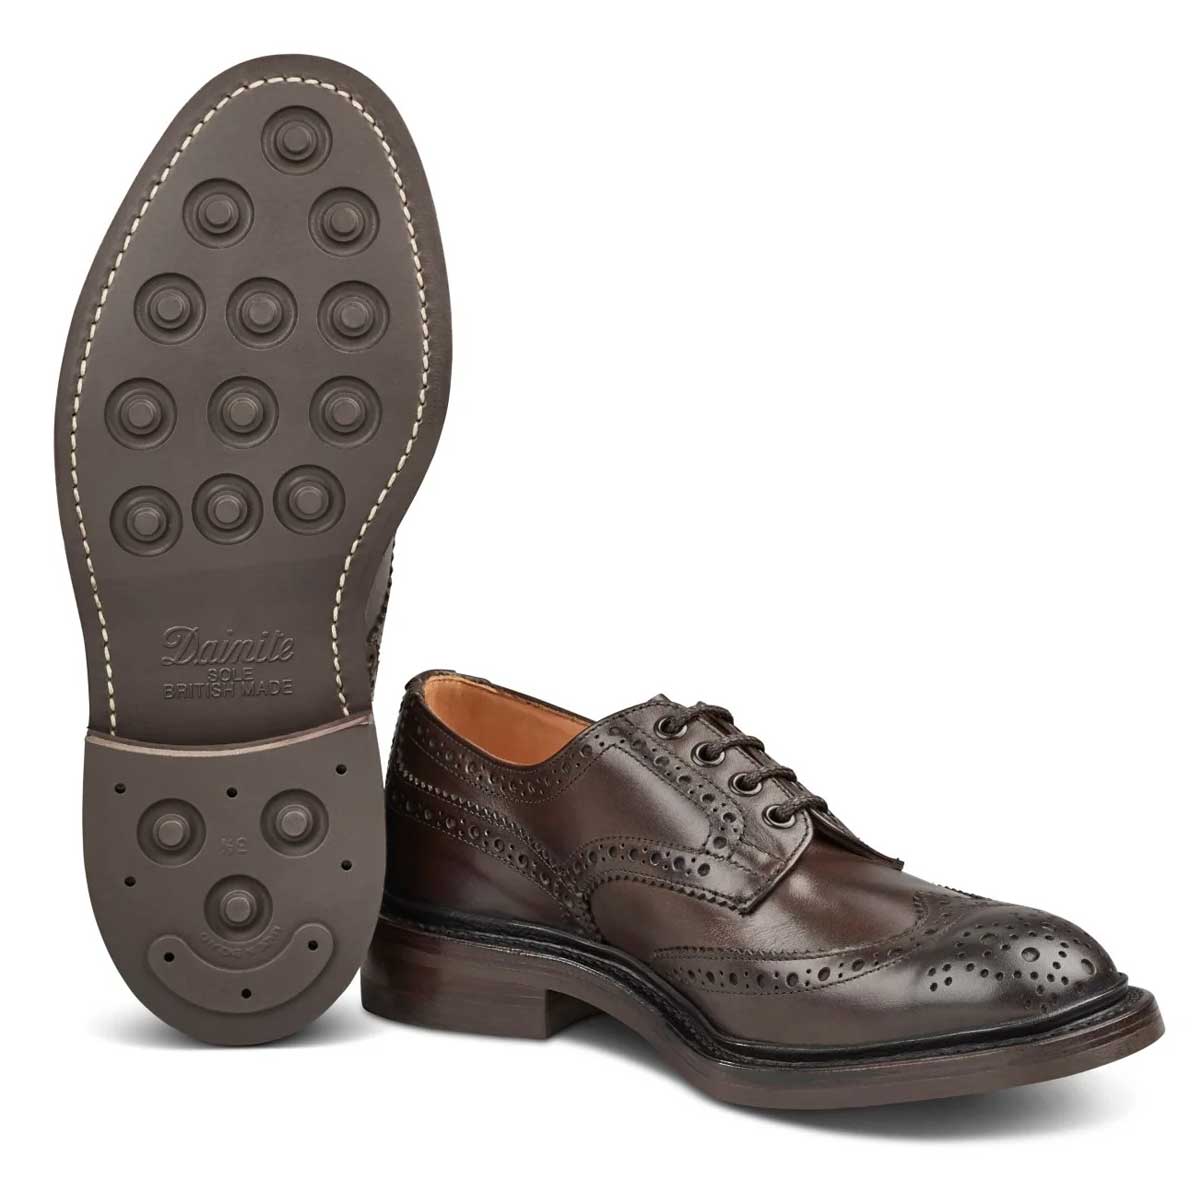 50% OFF TRICKER'S Bourton Shoes - Mens Dainite Sole - Espresso - Size UK 10